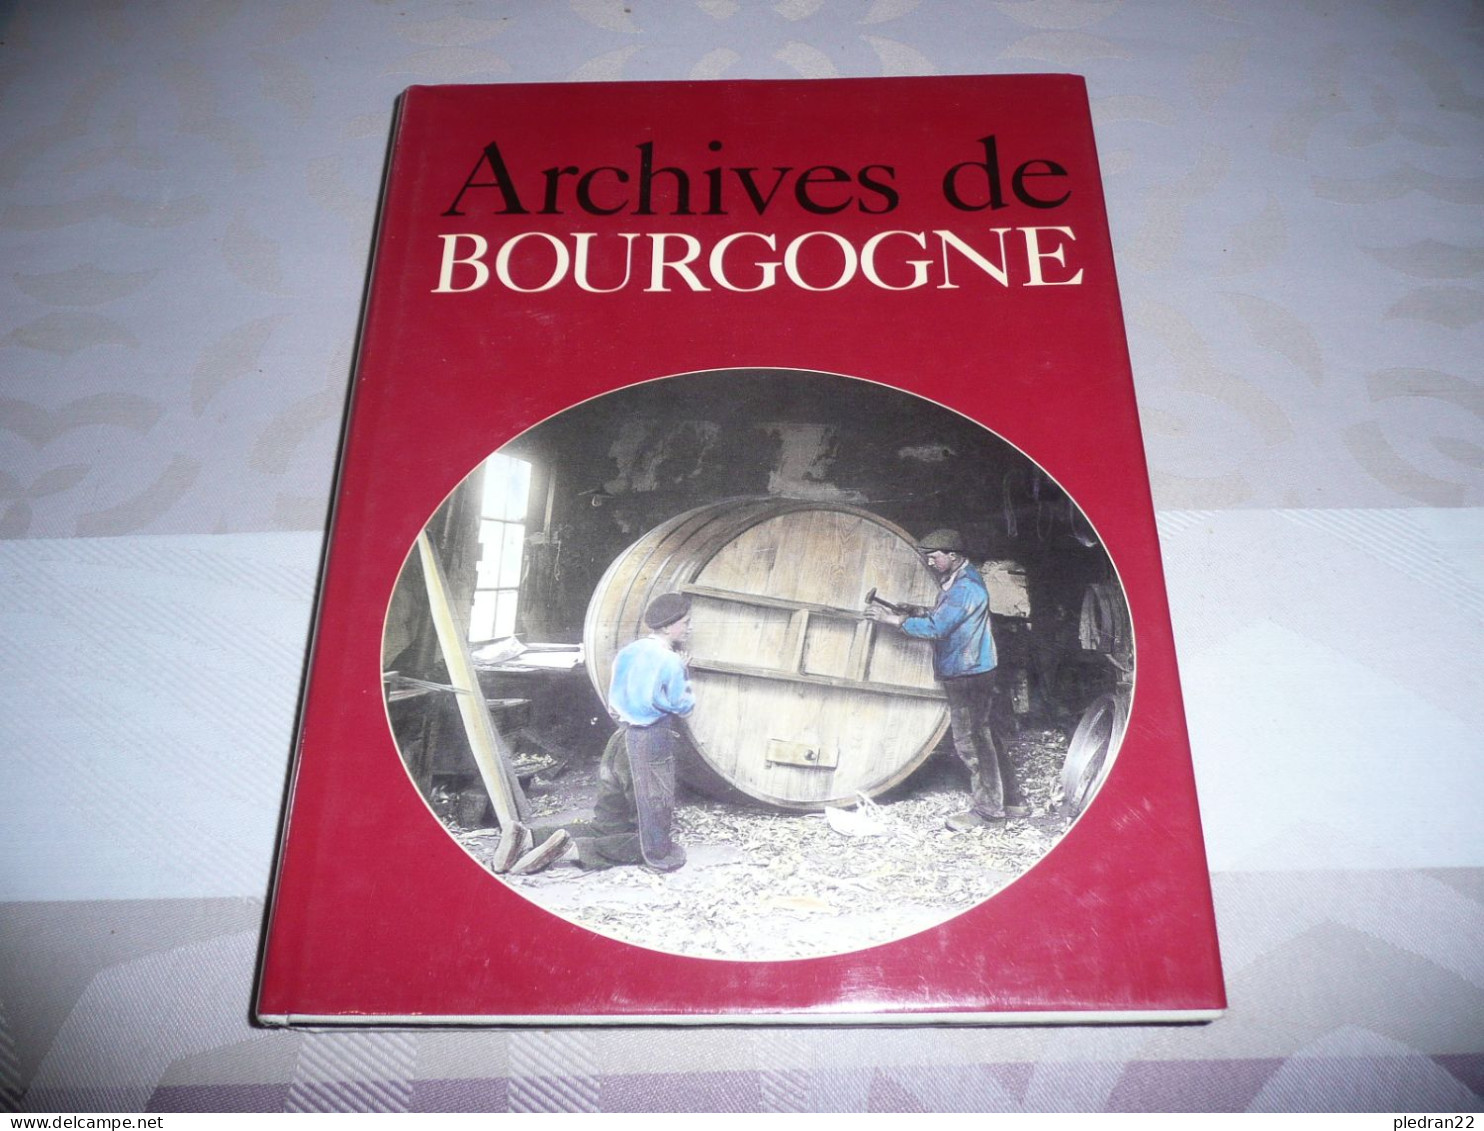 JACQUES BORGE ET NICOLAS VIASNOFF ARCHIVES DE BOURGOGNE EDITIONS MICHELE TRINCKVEL 1993 - Bourgogne